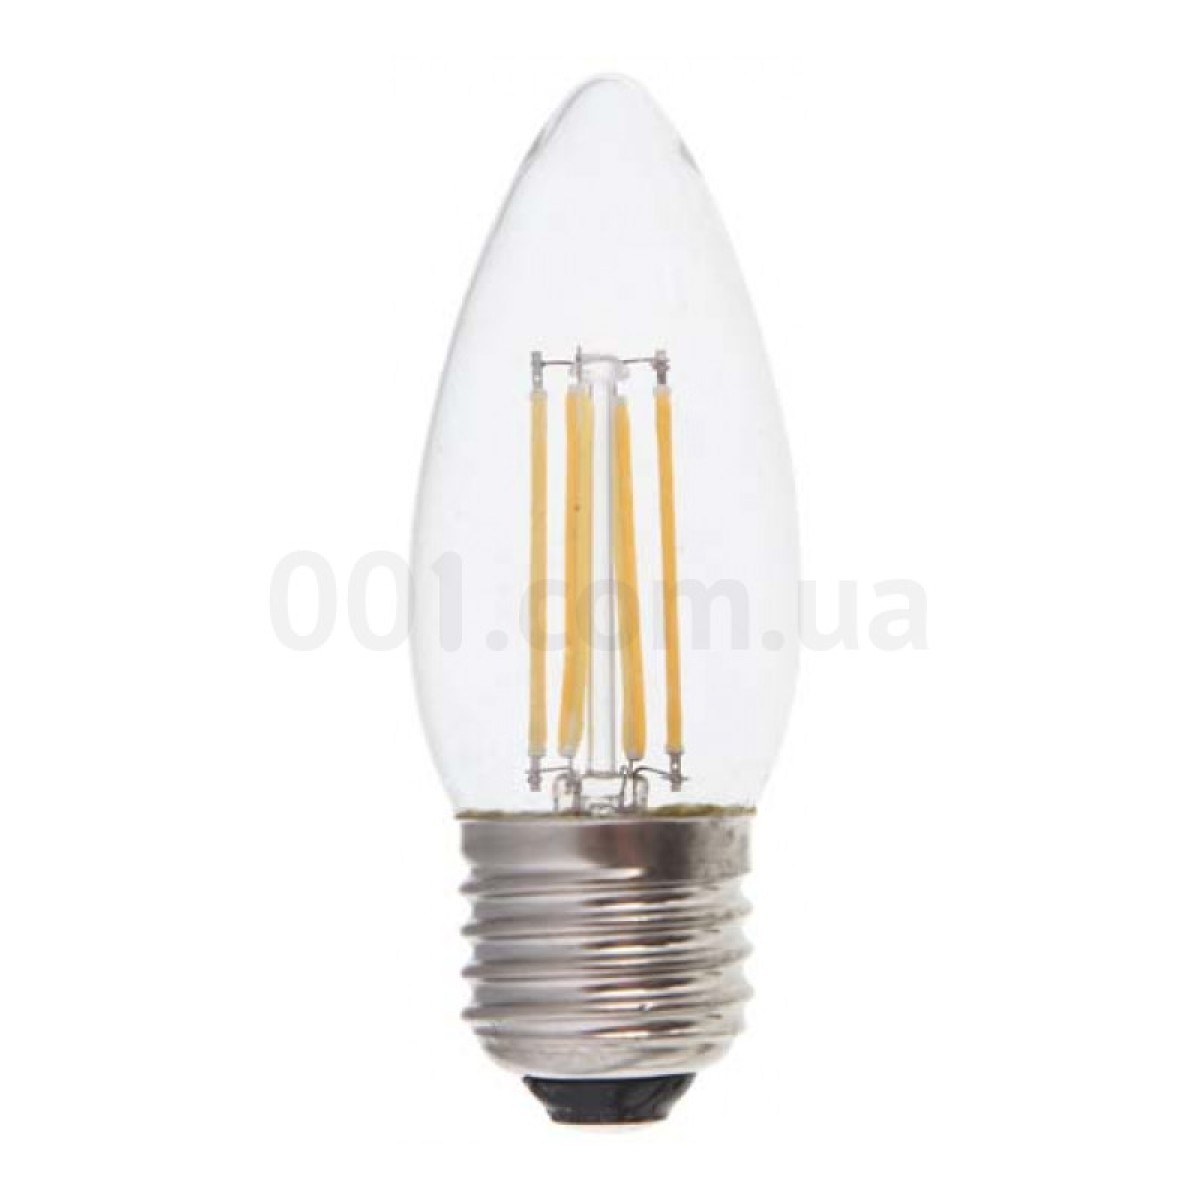 Світлодіодна лампа LB-58 C37 (свічка) філамент 4Вт 4000K E27, Feron 256_256.jpg